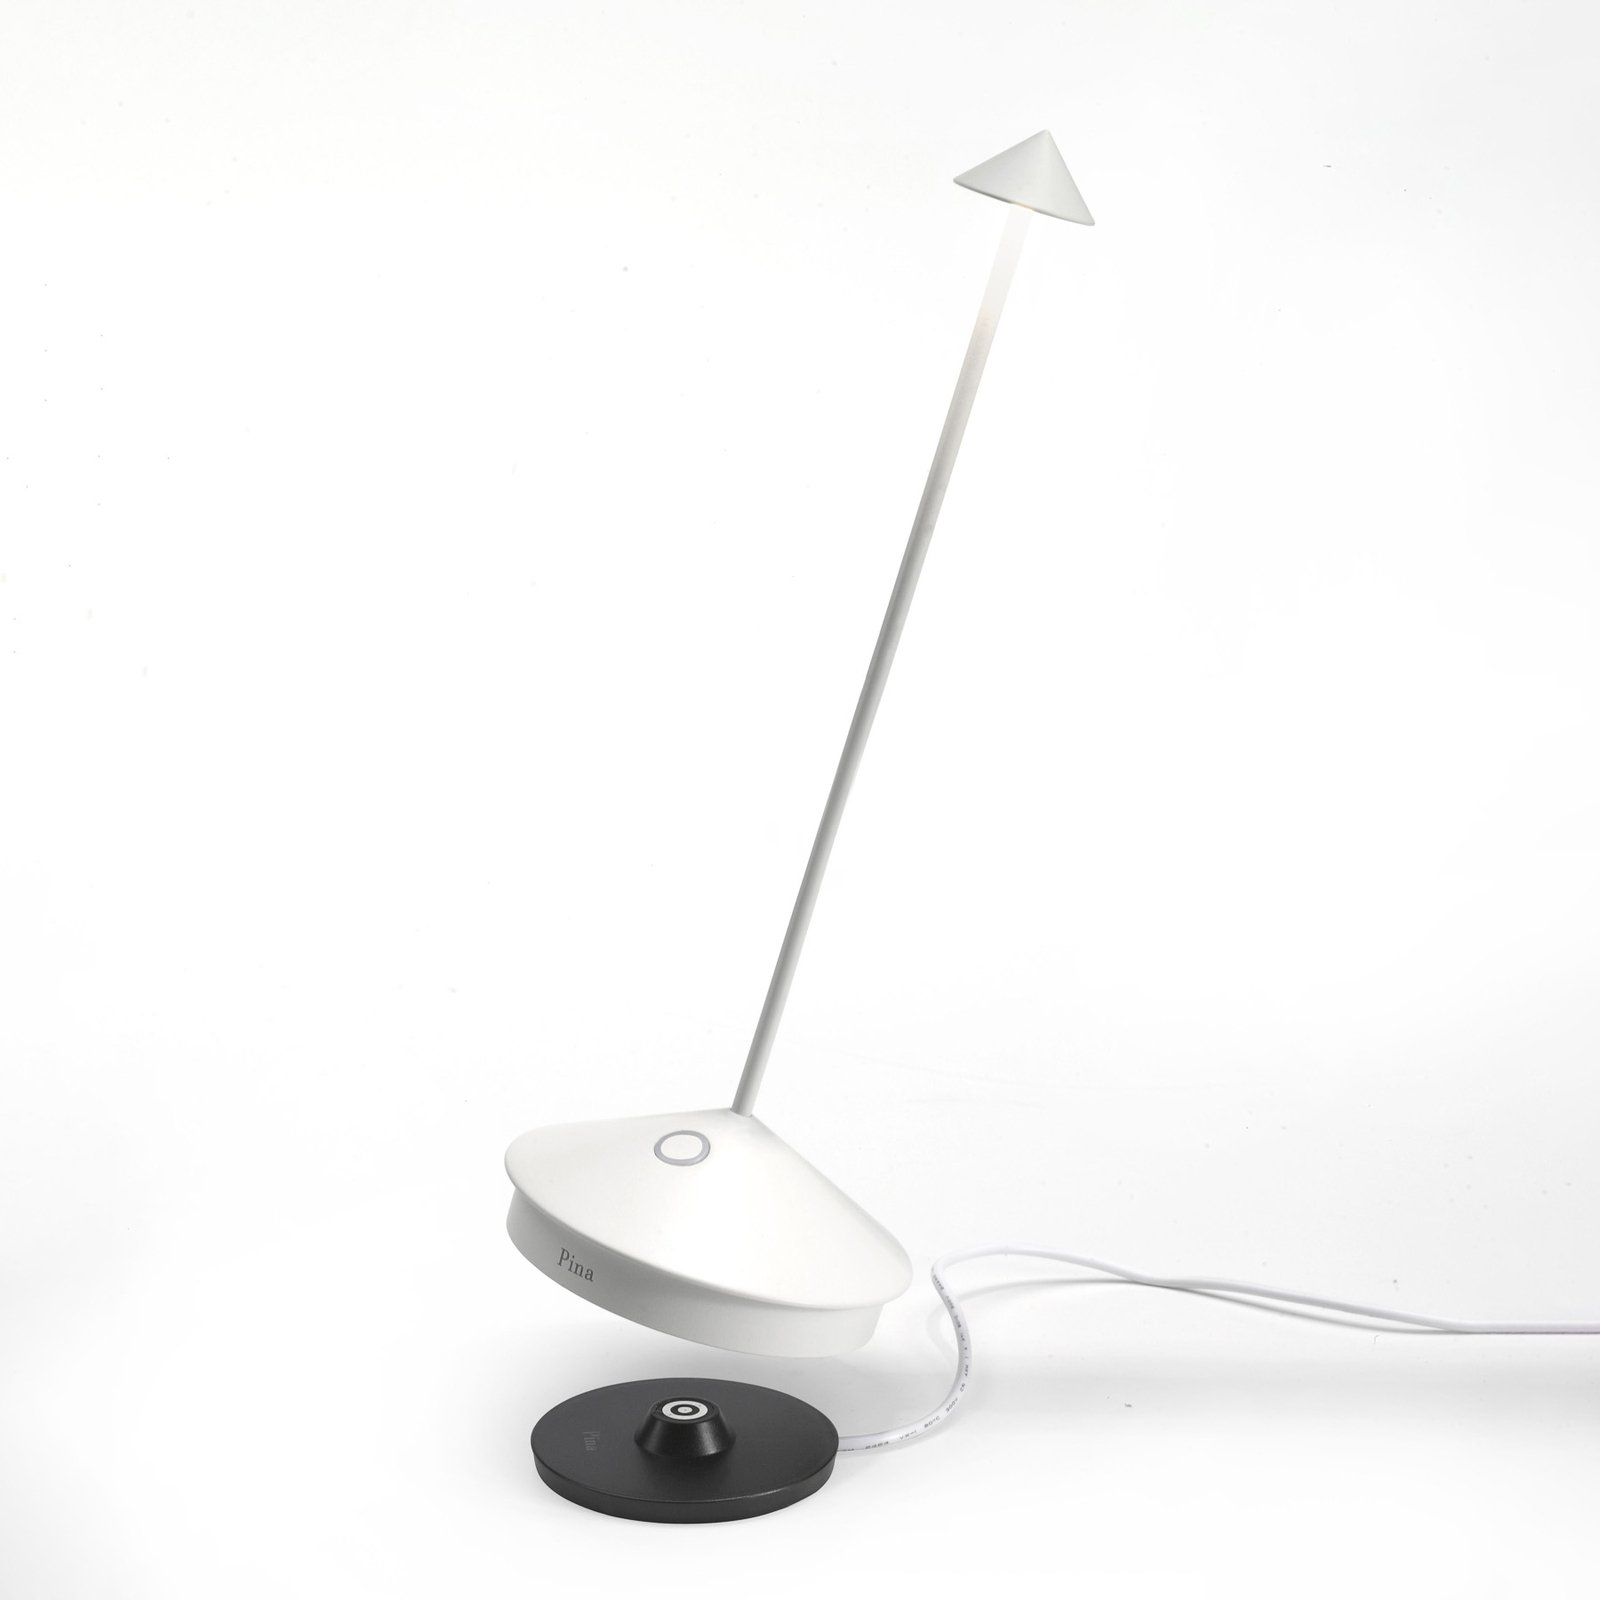 Zafferano Pina 3K stolna svjetiljka na baterije IP54 bijela